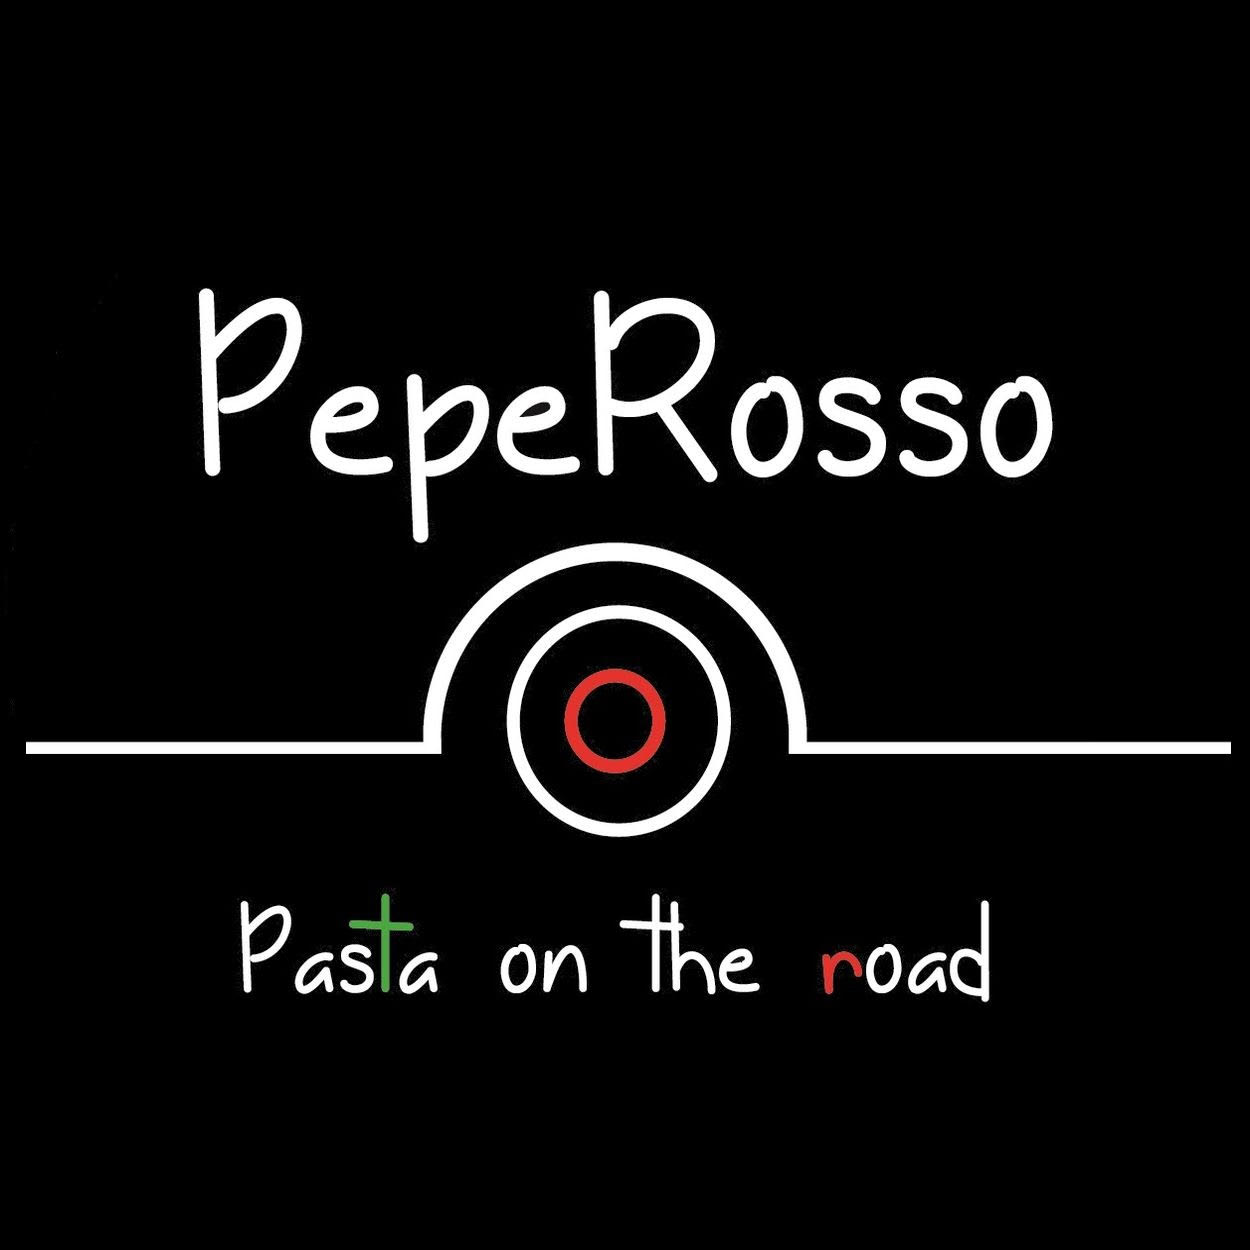 Logo Pepe Rosso